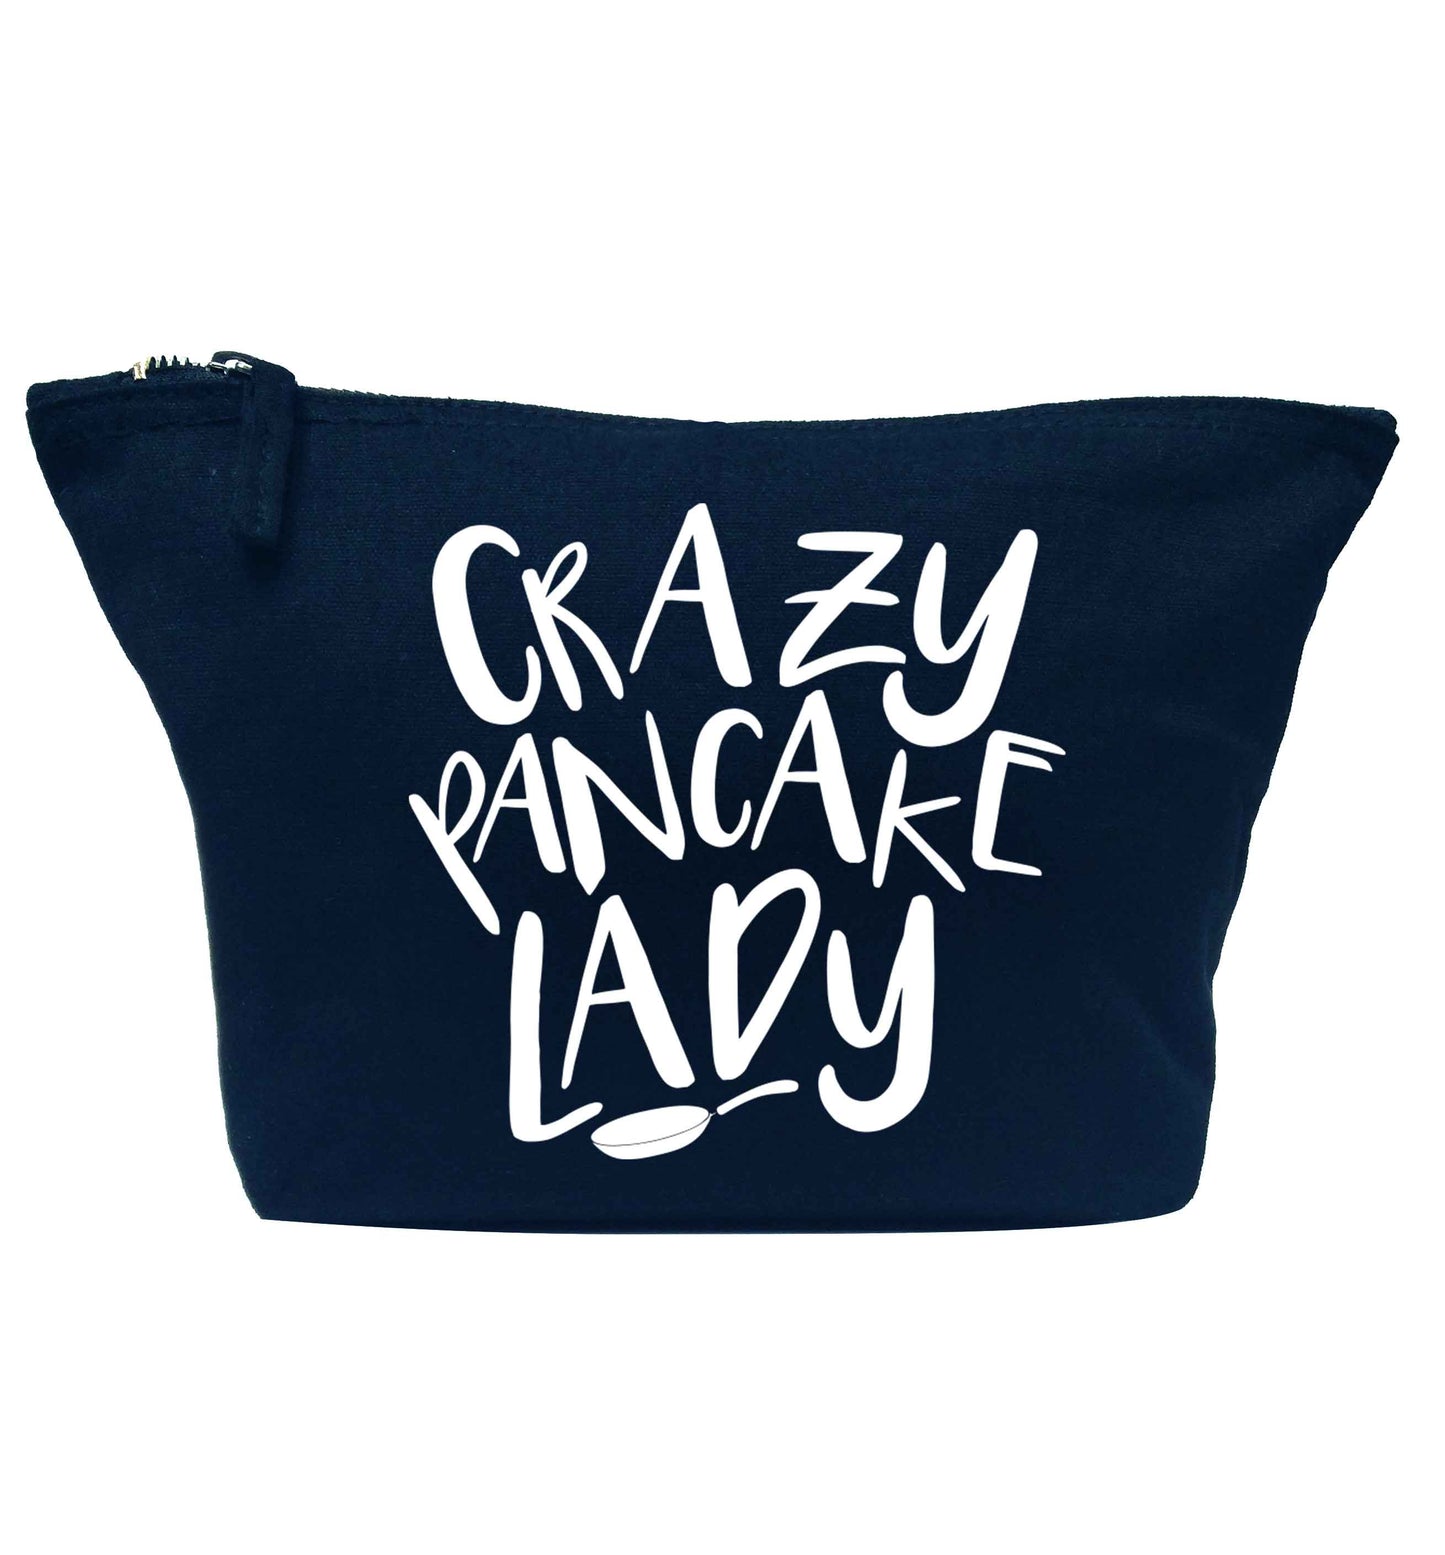 Crazy pancake lady navy makeup bag